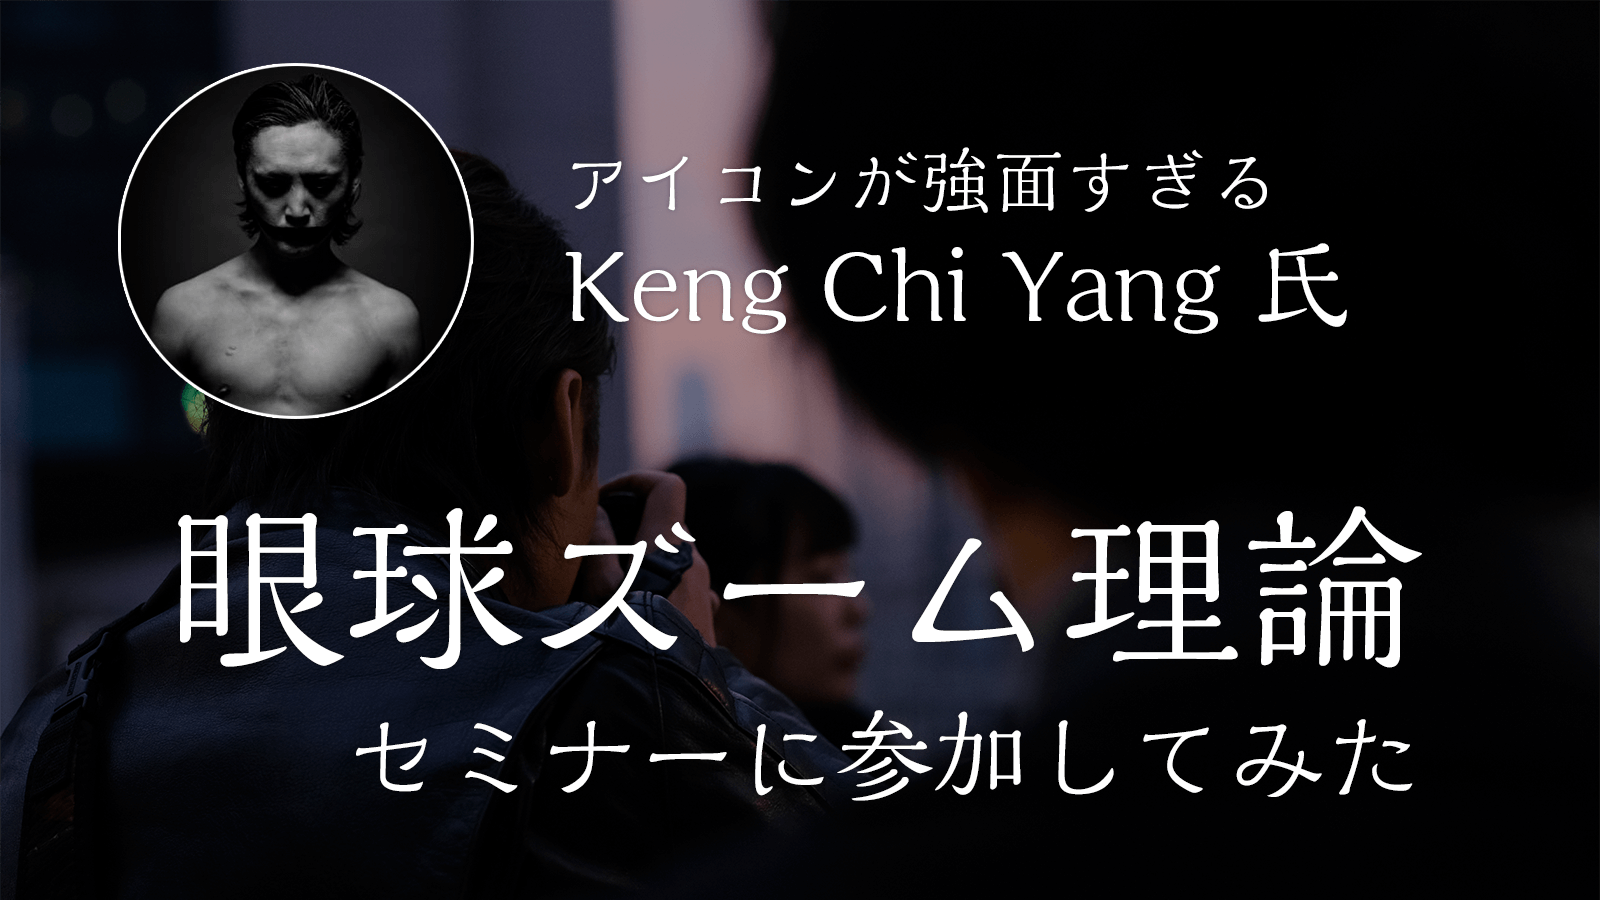 強面 Keng Chi Yang氏の 眼球ズーム理論セミナーに参加してきたのメインビジュアル